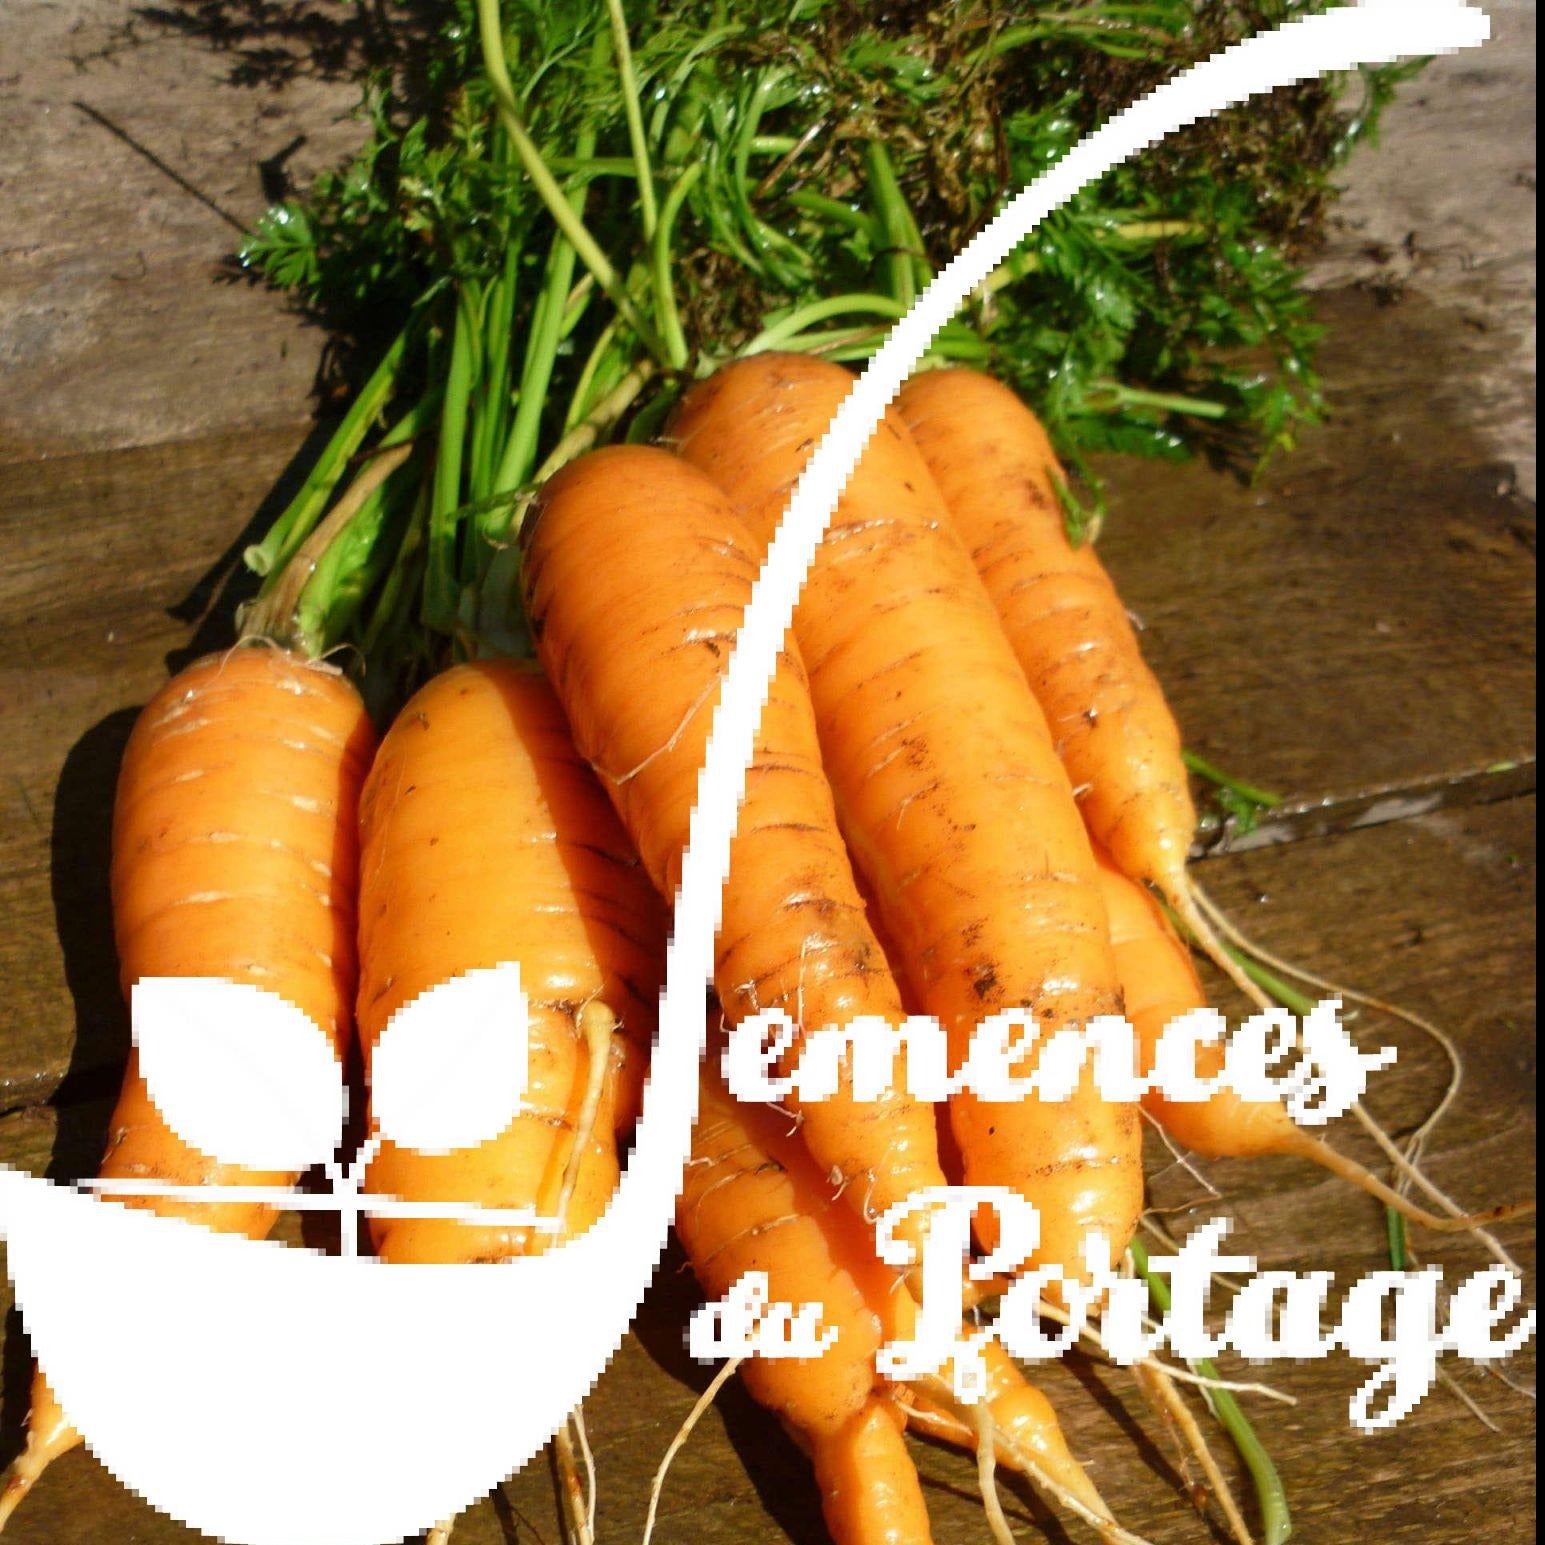 Croque Paysage,semences Carotte Danvers biologiques,légume racine annuel pour potager,semenciers québécois,laurentides,val-david